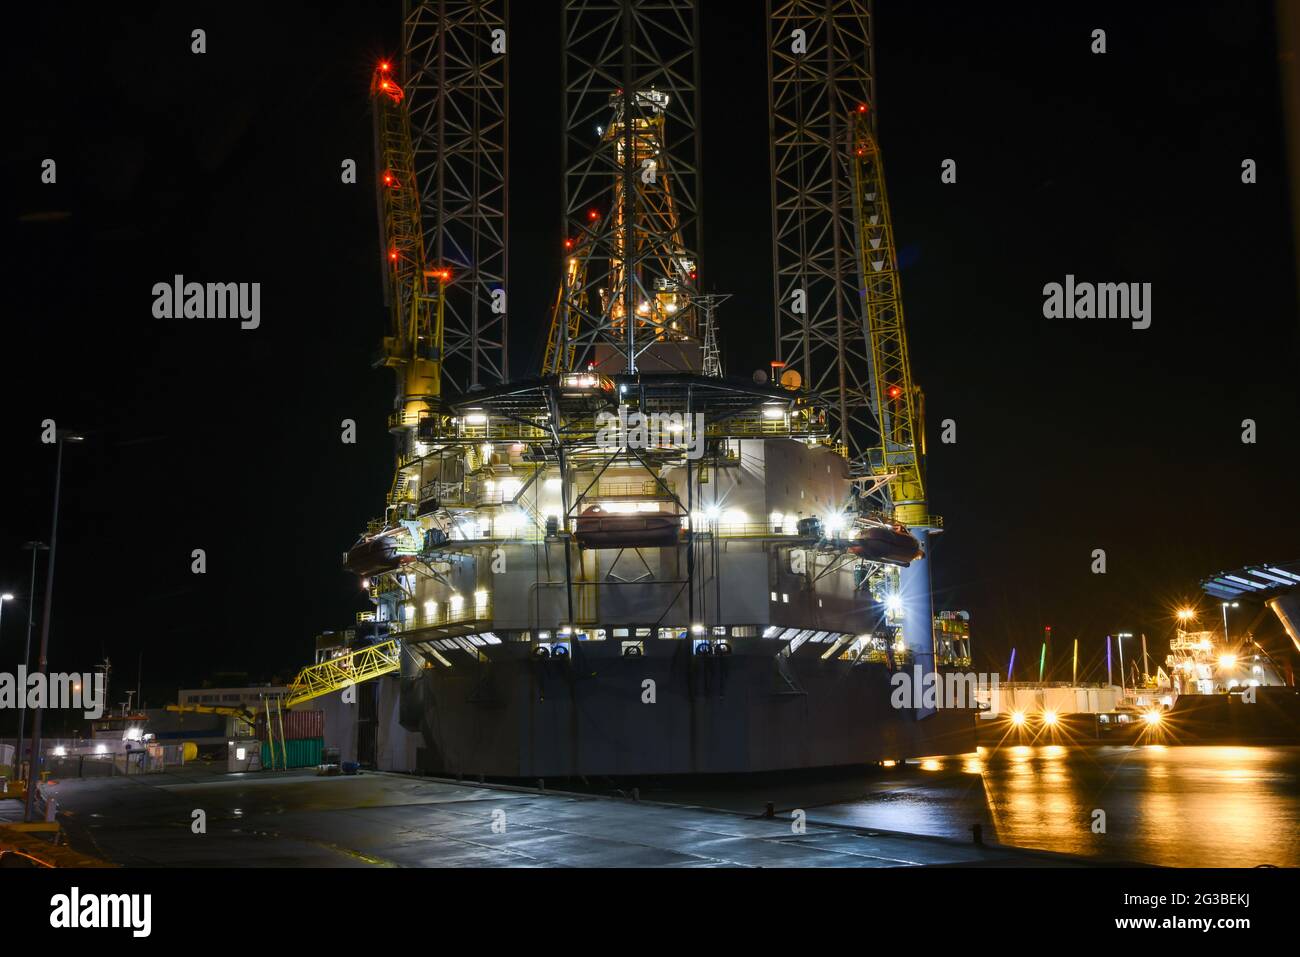 Den Helder, Paesi Bassi. Novembre 2019. Vibes porto. Un carro di perforazione e un fornitore di notte nel porto di Den Helder, Paesi Bassi. Foto di alta qualità Foto Stock